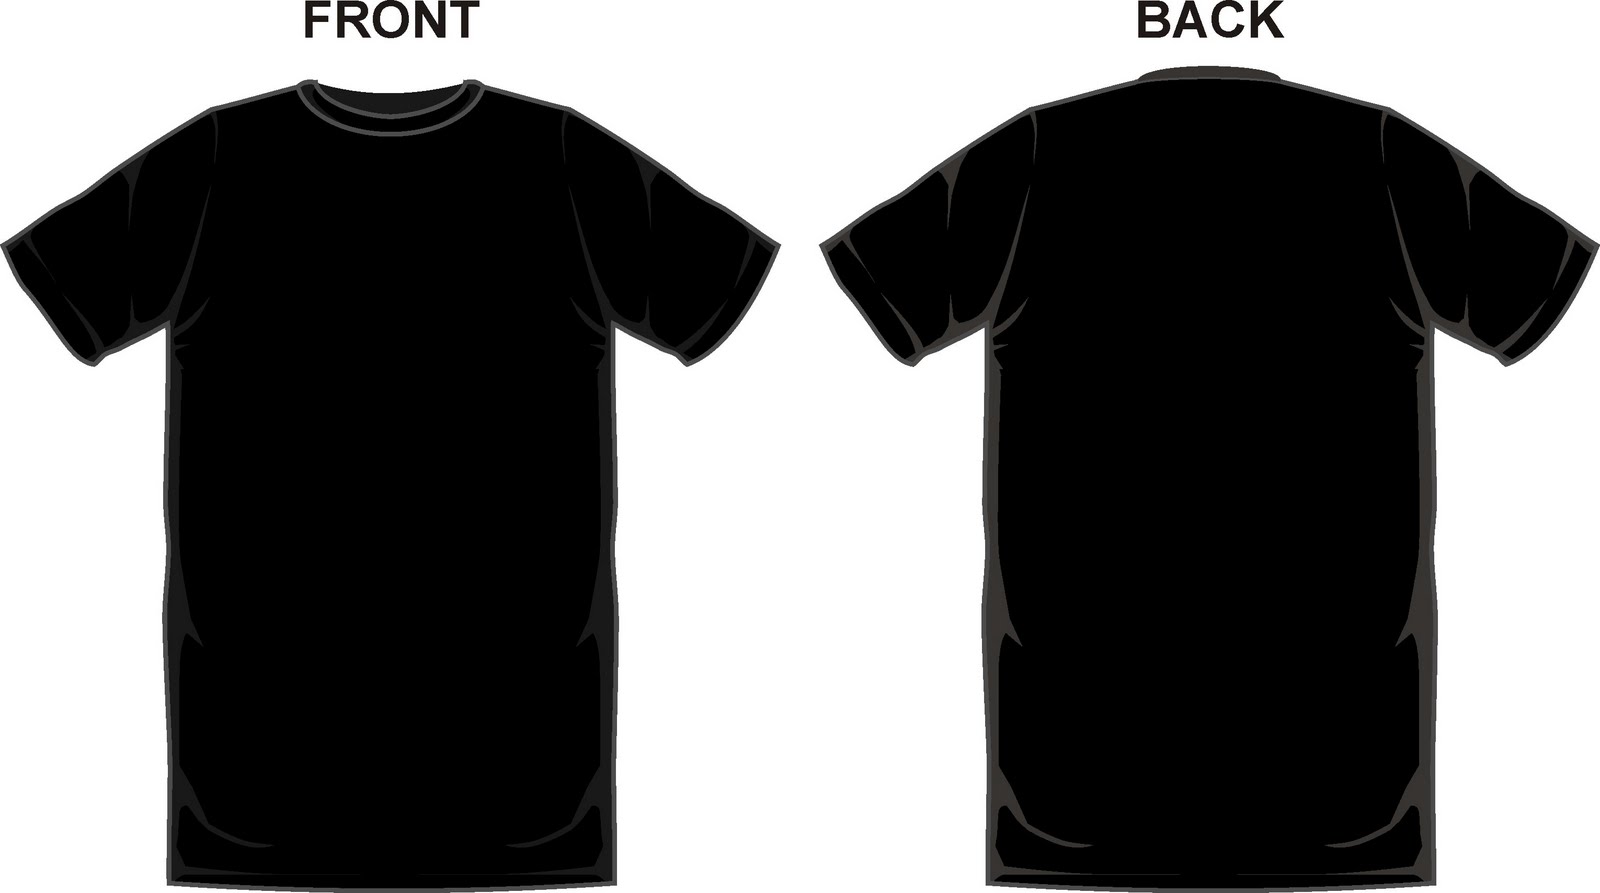 Download Blank Black T Shirt Front And Back Psd | Joy Studio Design ...